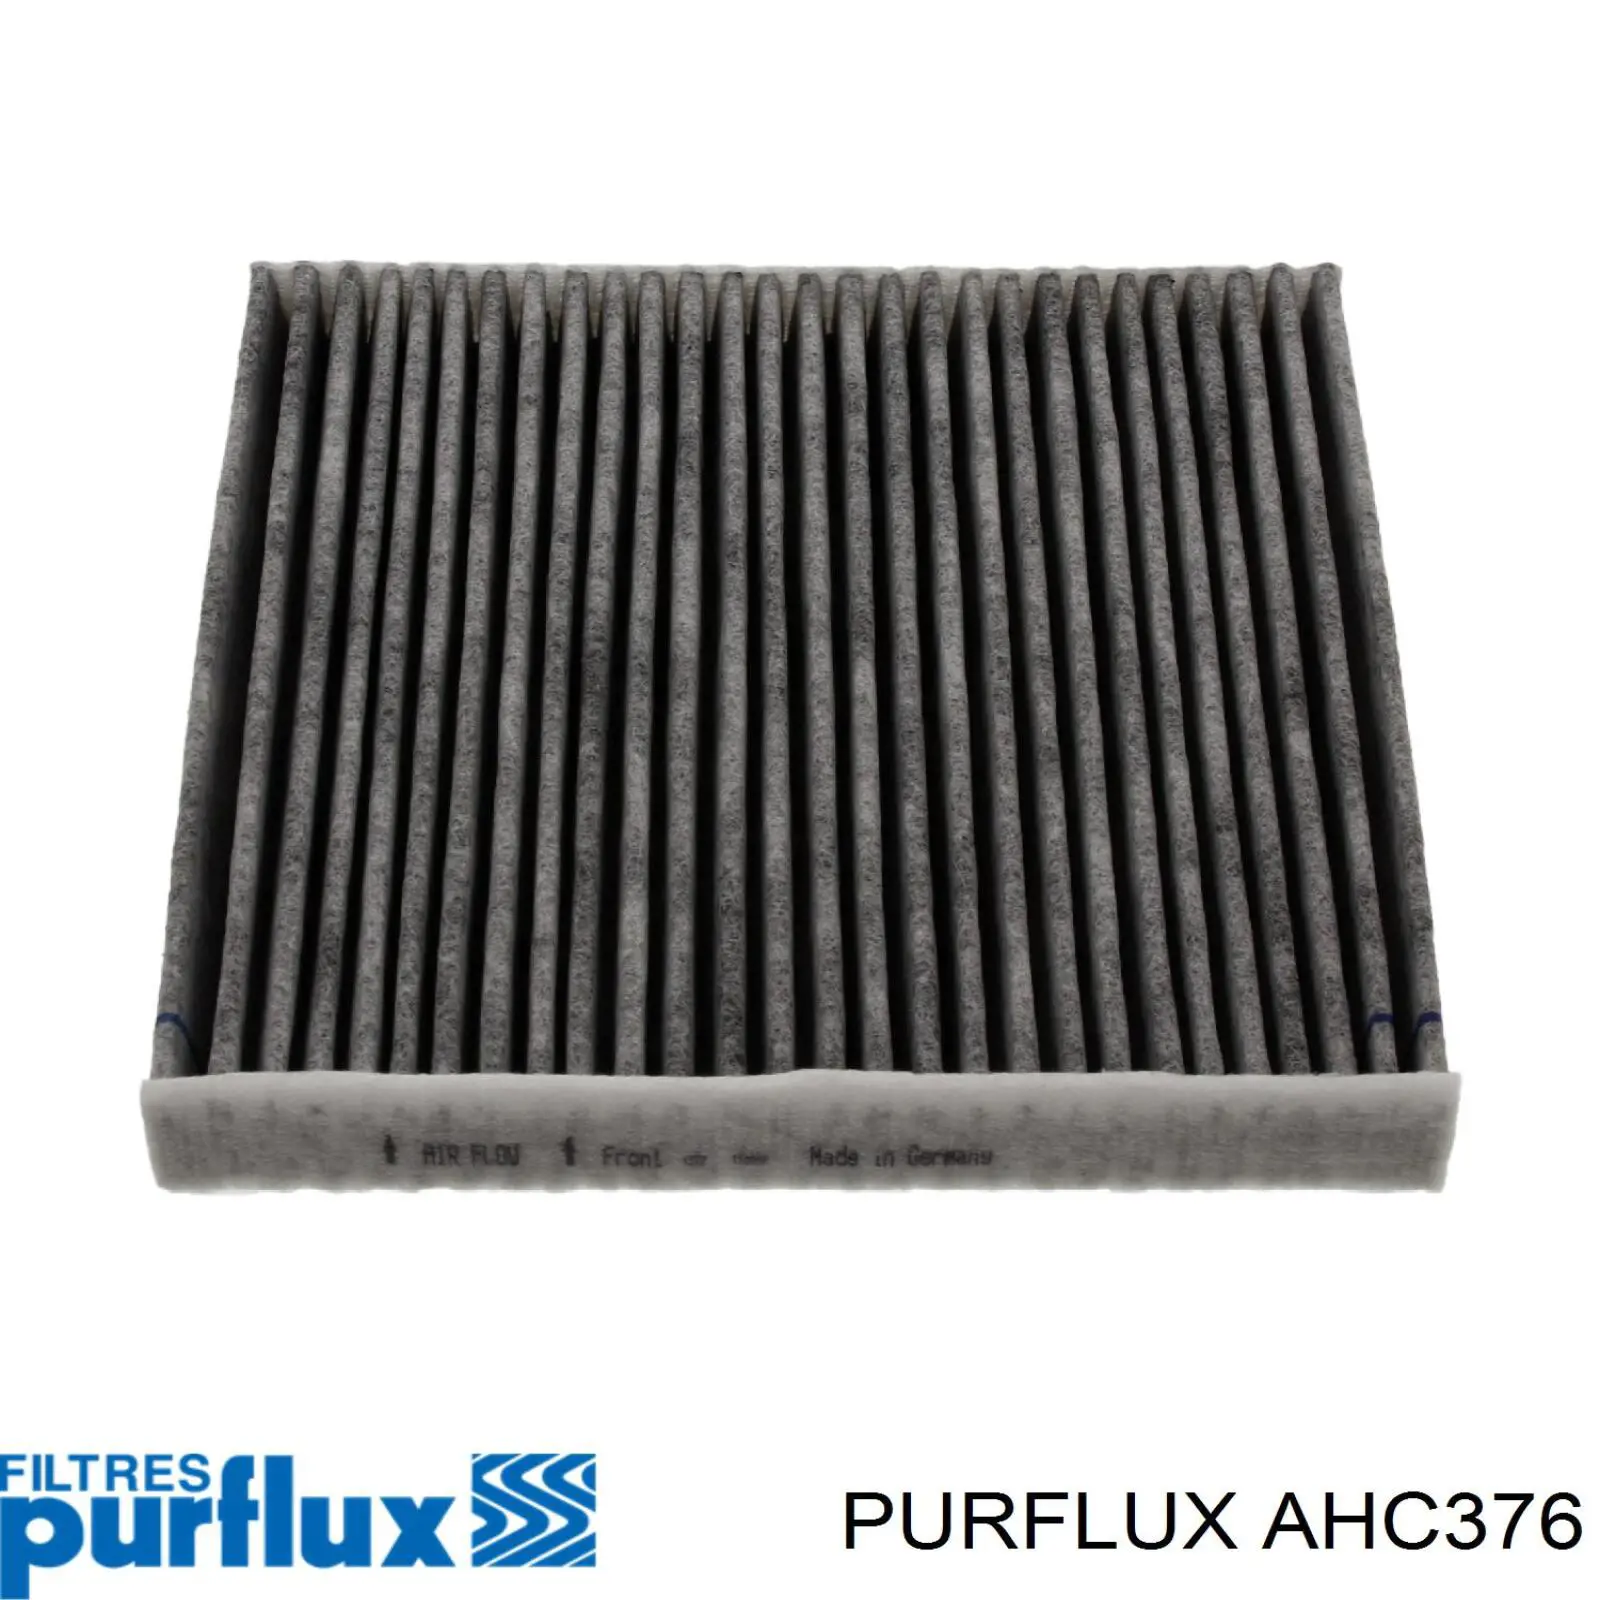 AHC376 Purflux filtro habitáculo